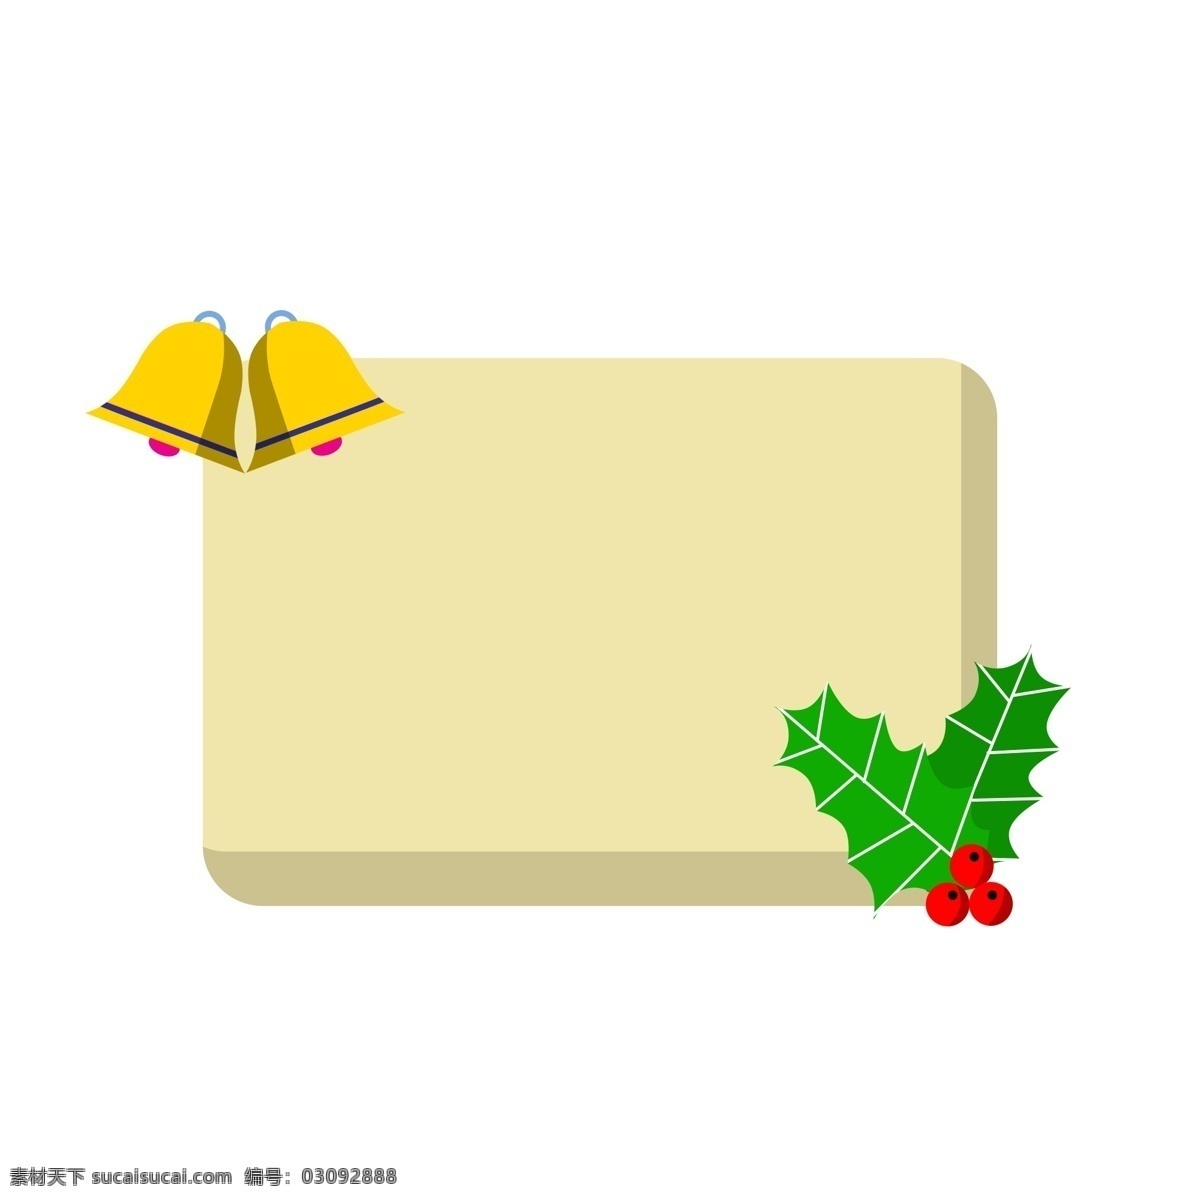 圣诞节 铃铛 边框 插画 圣诞节边框 边框插画 绿色的叶子 漂亮的边框 铃铛边框 金色的铃铛 红色的果食